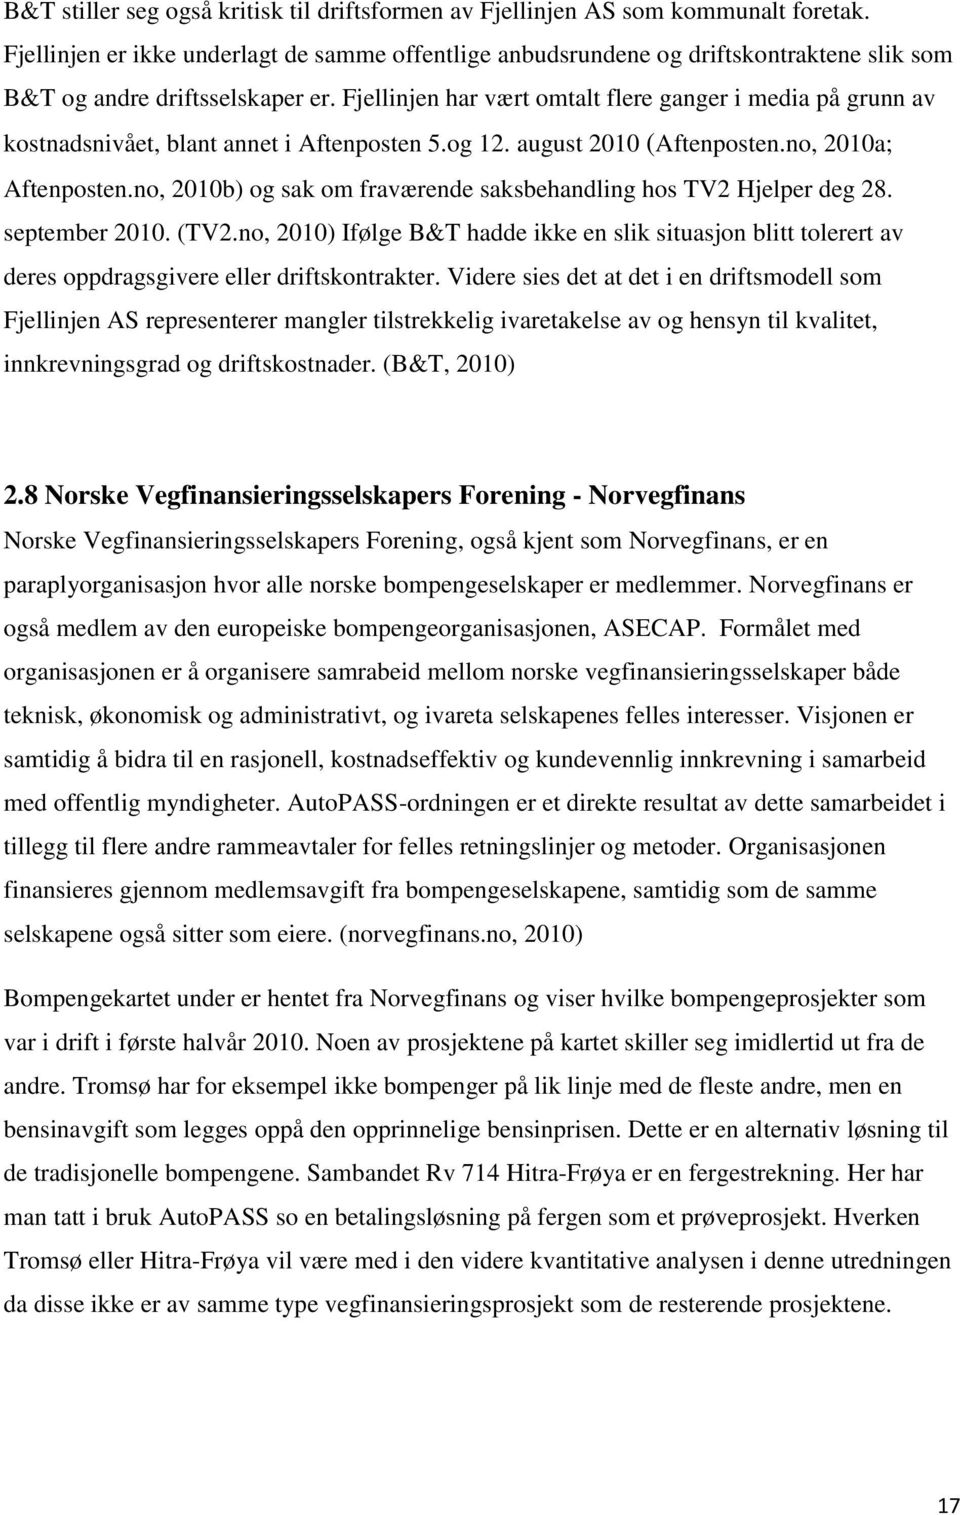 Fjellinjen har vært omtalt flere ganger i media på grunn av kostnadsnivået, blant annet i Aftenposten 5.og 12. august 2010 (Aftenposten.no, 2010a; Aftenposten.